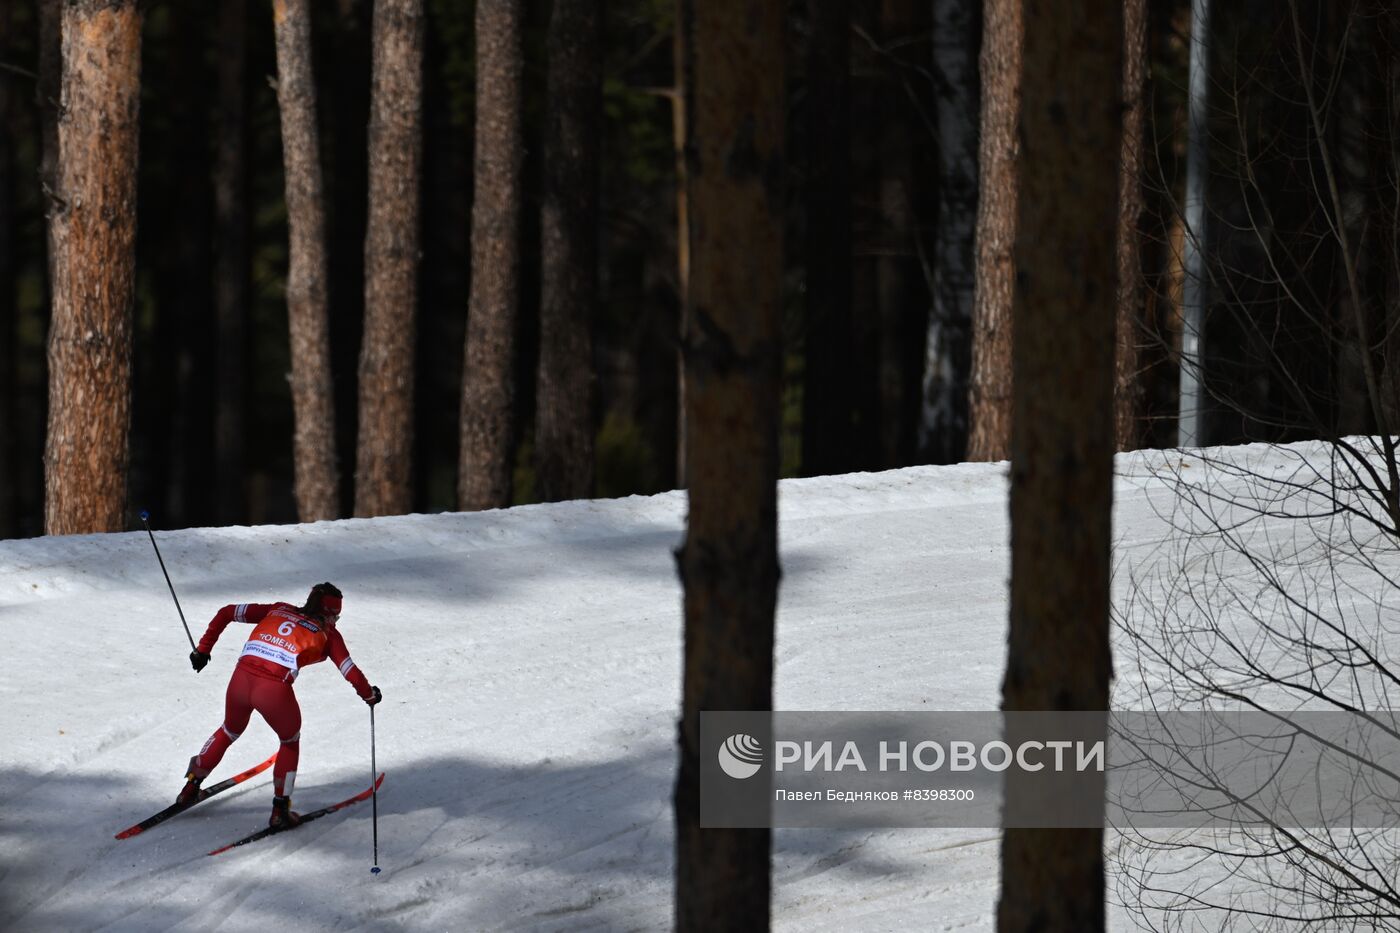 Лыжные гонки. Чемпионат России. Женщины. Масс-старт